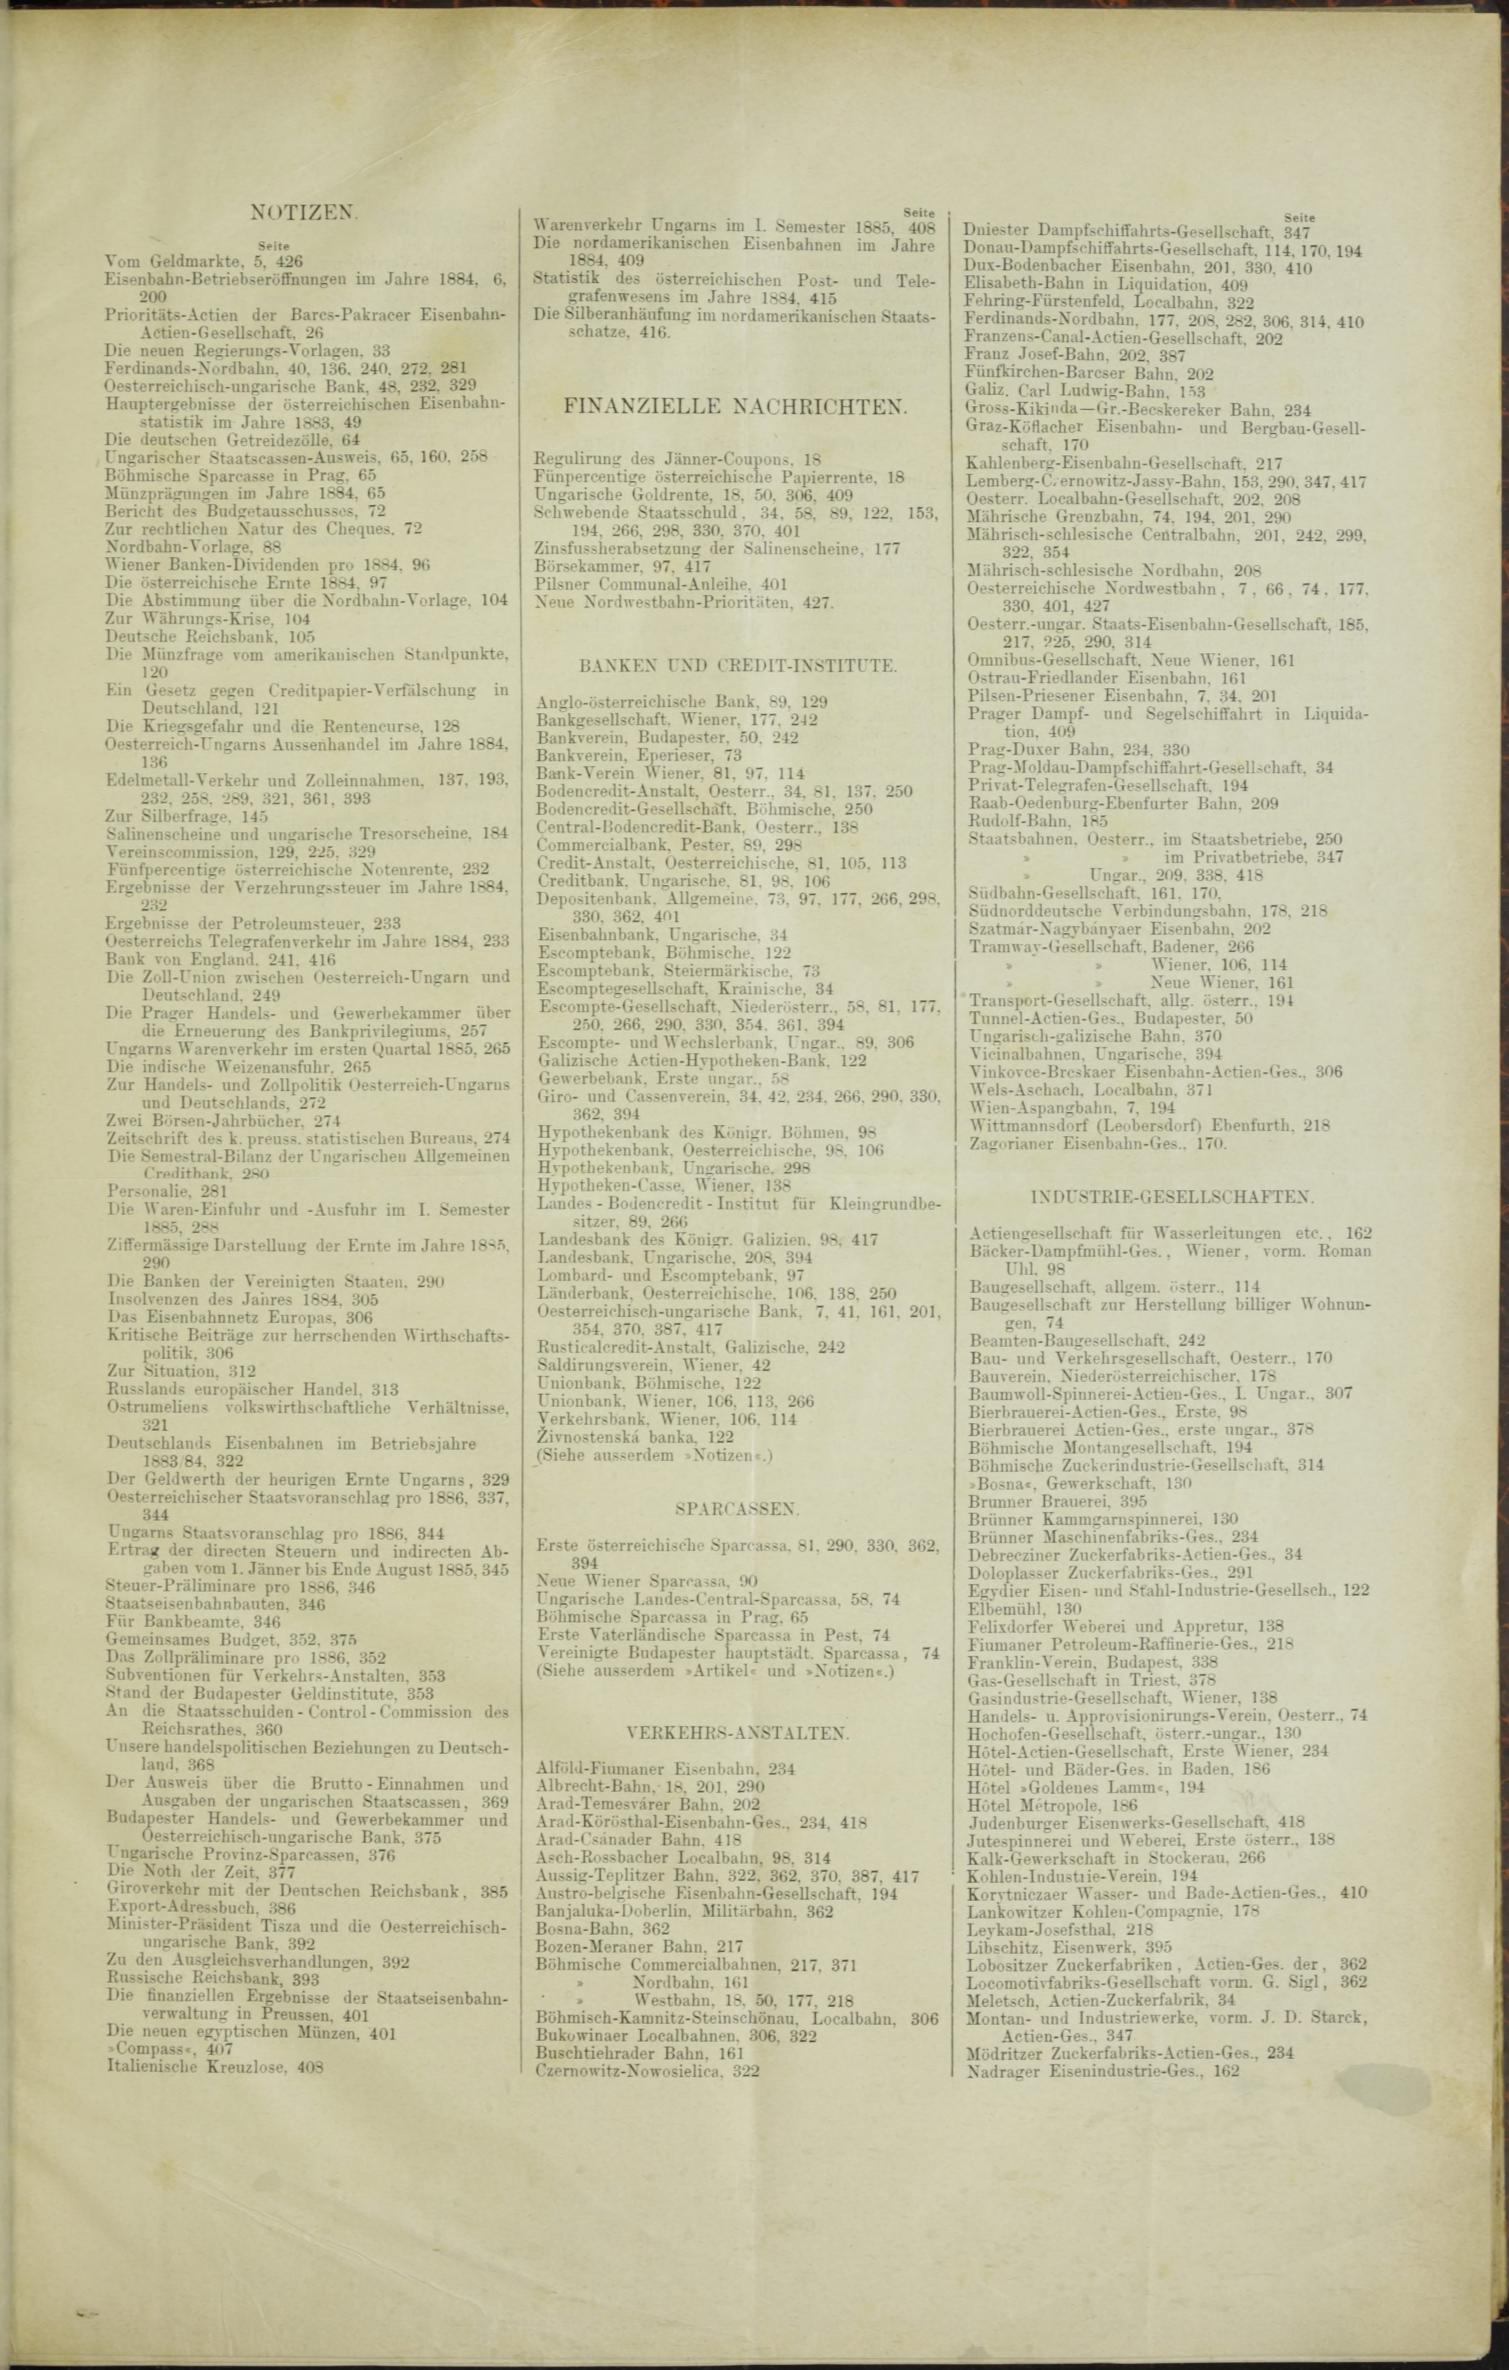 Der Tresor 28.05.1885 - Seite 11